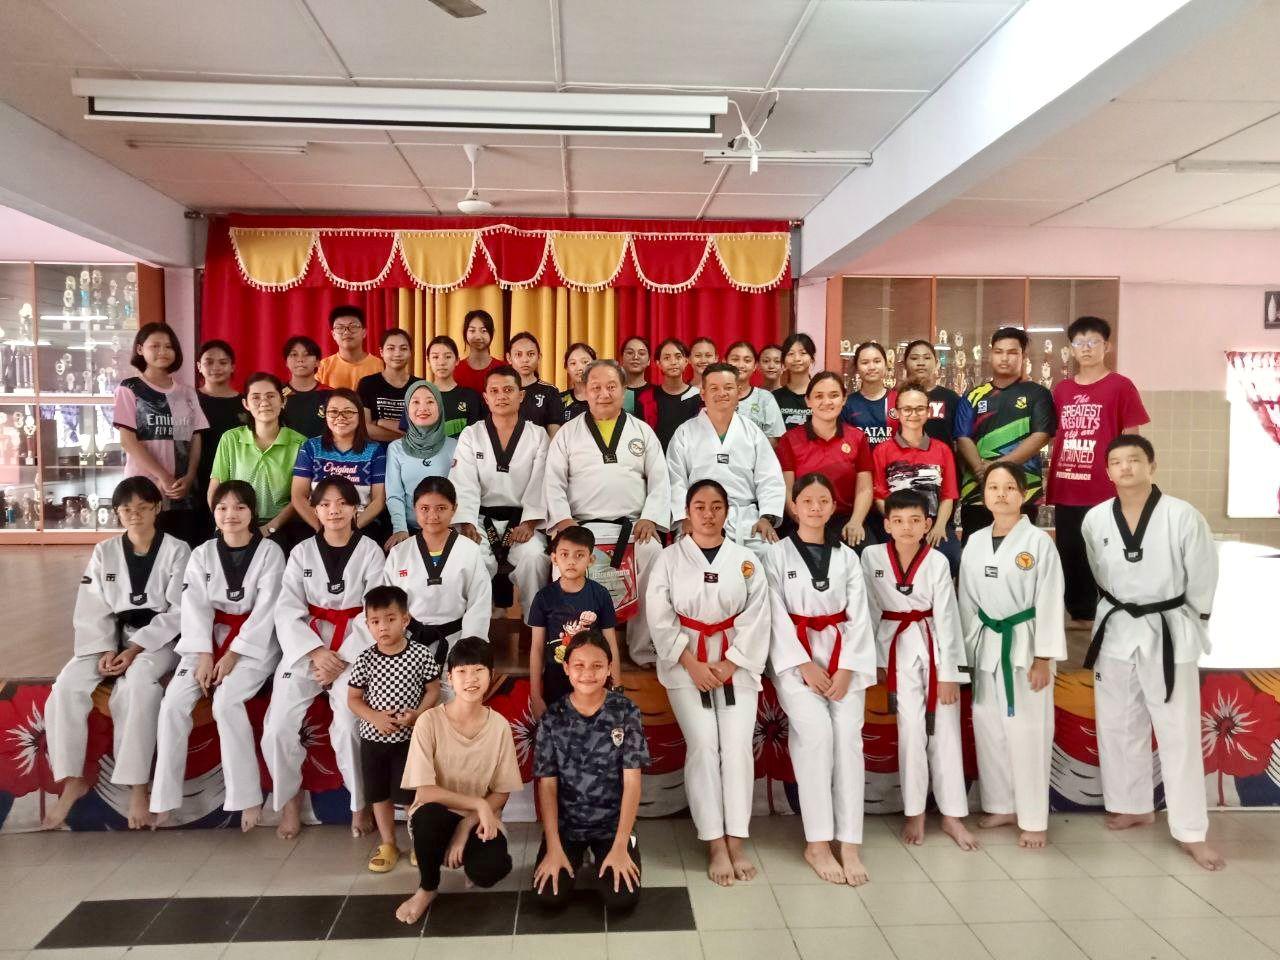 SMK Kapit’s taekwondo club starts training classes